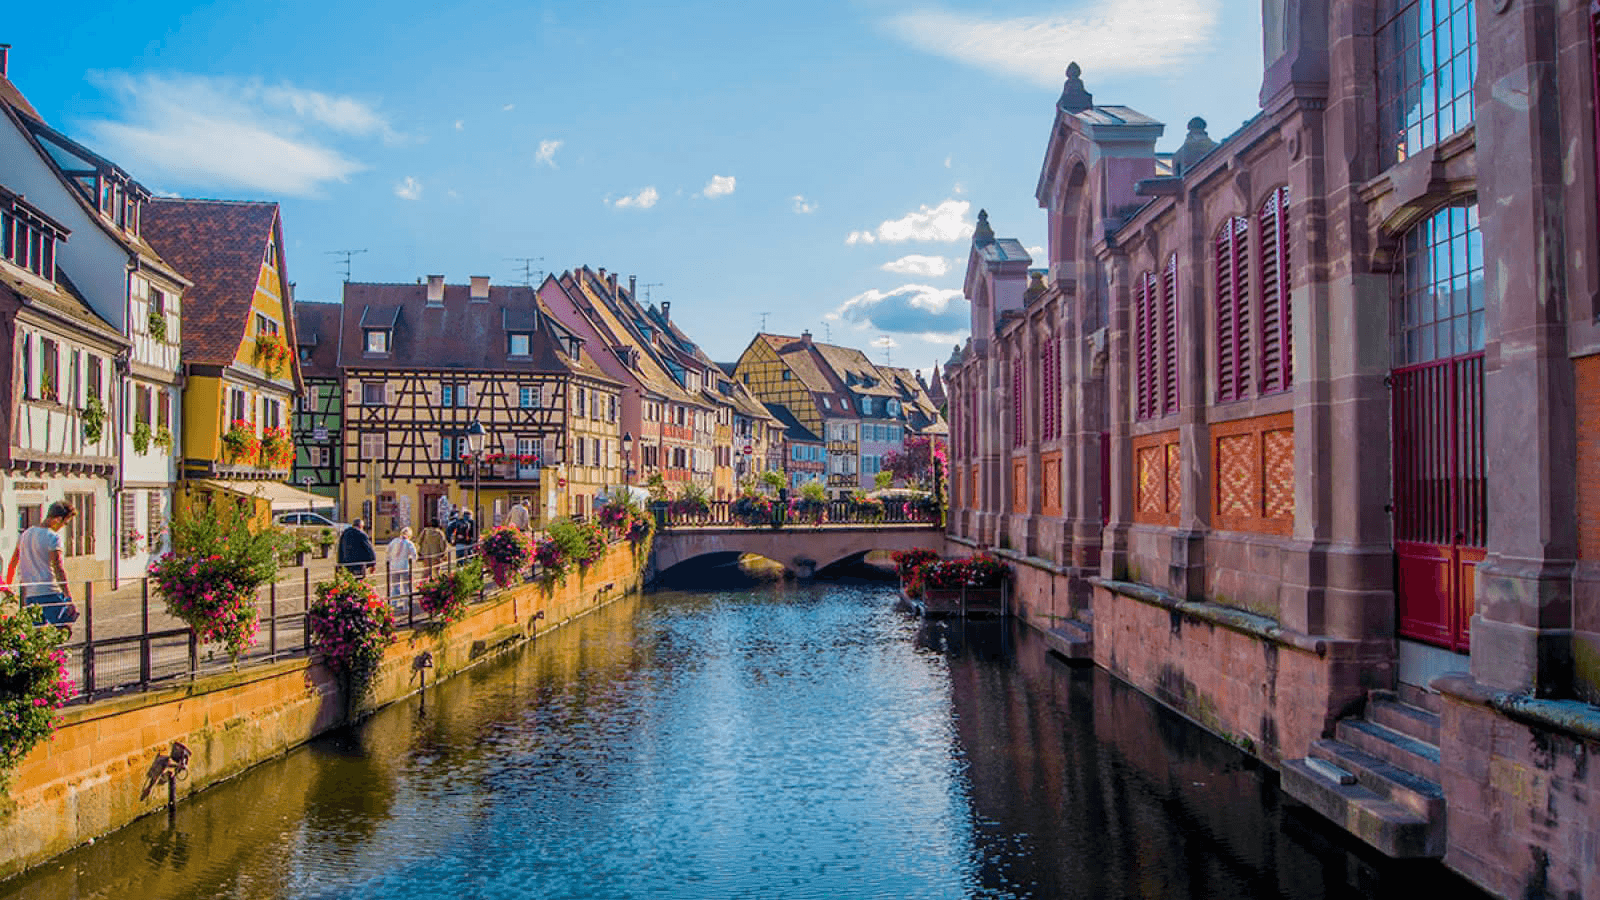 Source: Visit Alsace